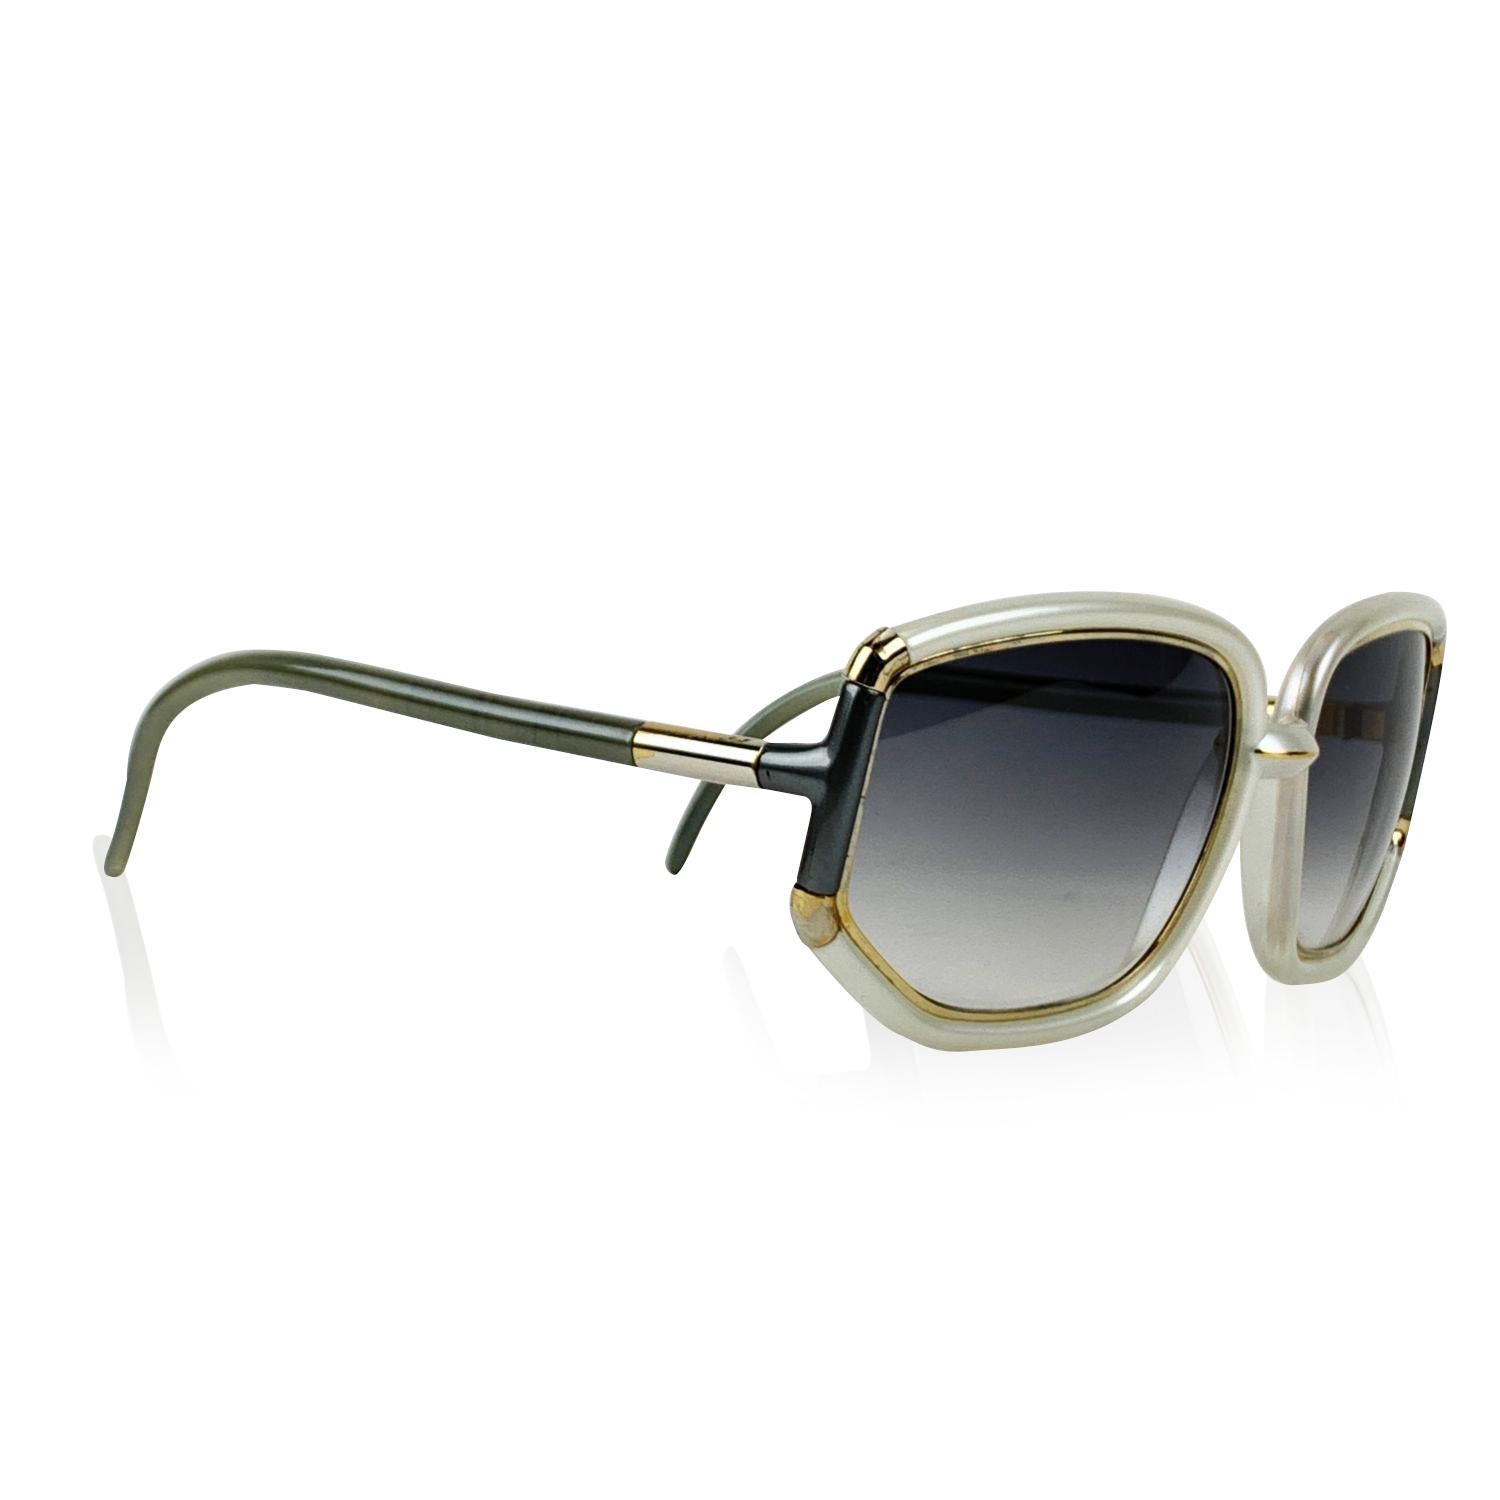 Rare lunettes de soleil surdimensionnées vintage TED LAPIDUS. Fabriqué en France. Monture carrée en acétate gris avec des accents métalliques dorés. Lentilles grises dégradées. Lentilles de qualité supérieure 100% UV.

Détails

MATERIAL :